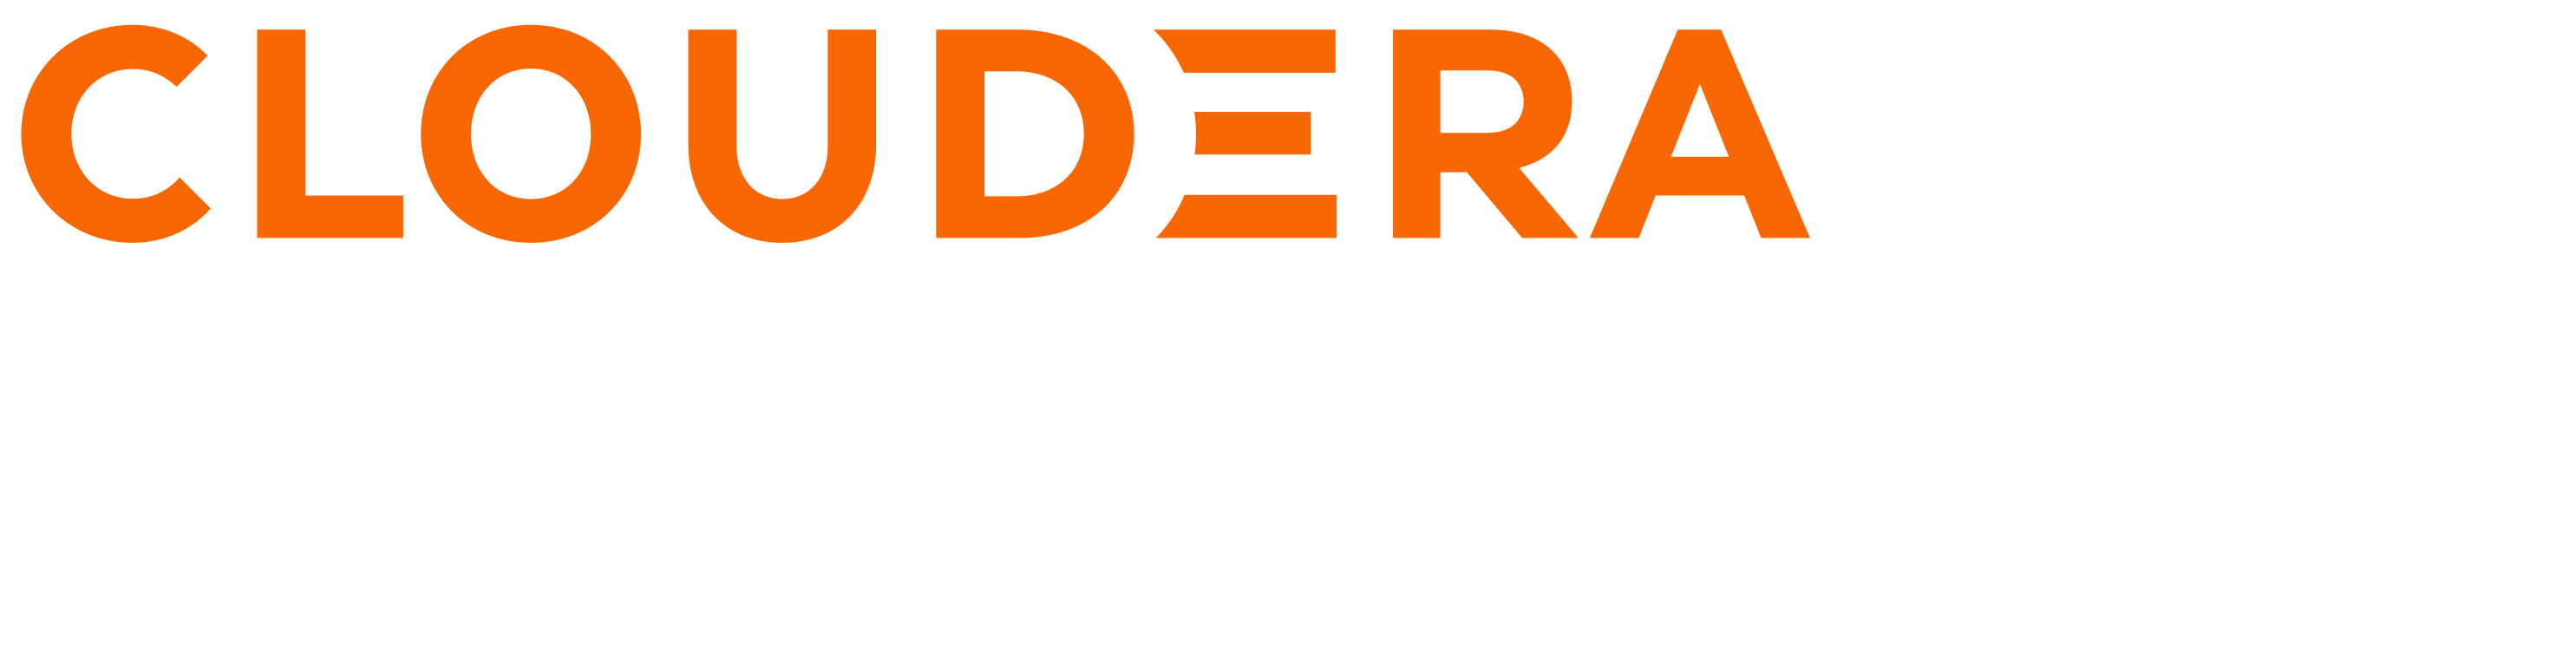 Cloudera Data Impact Awards